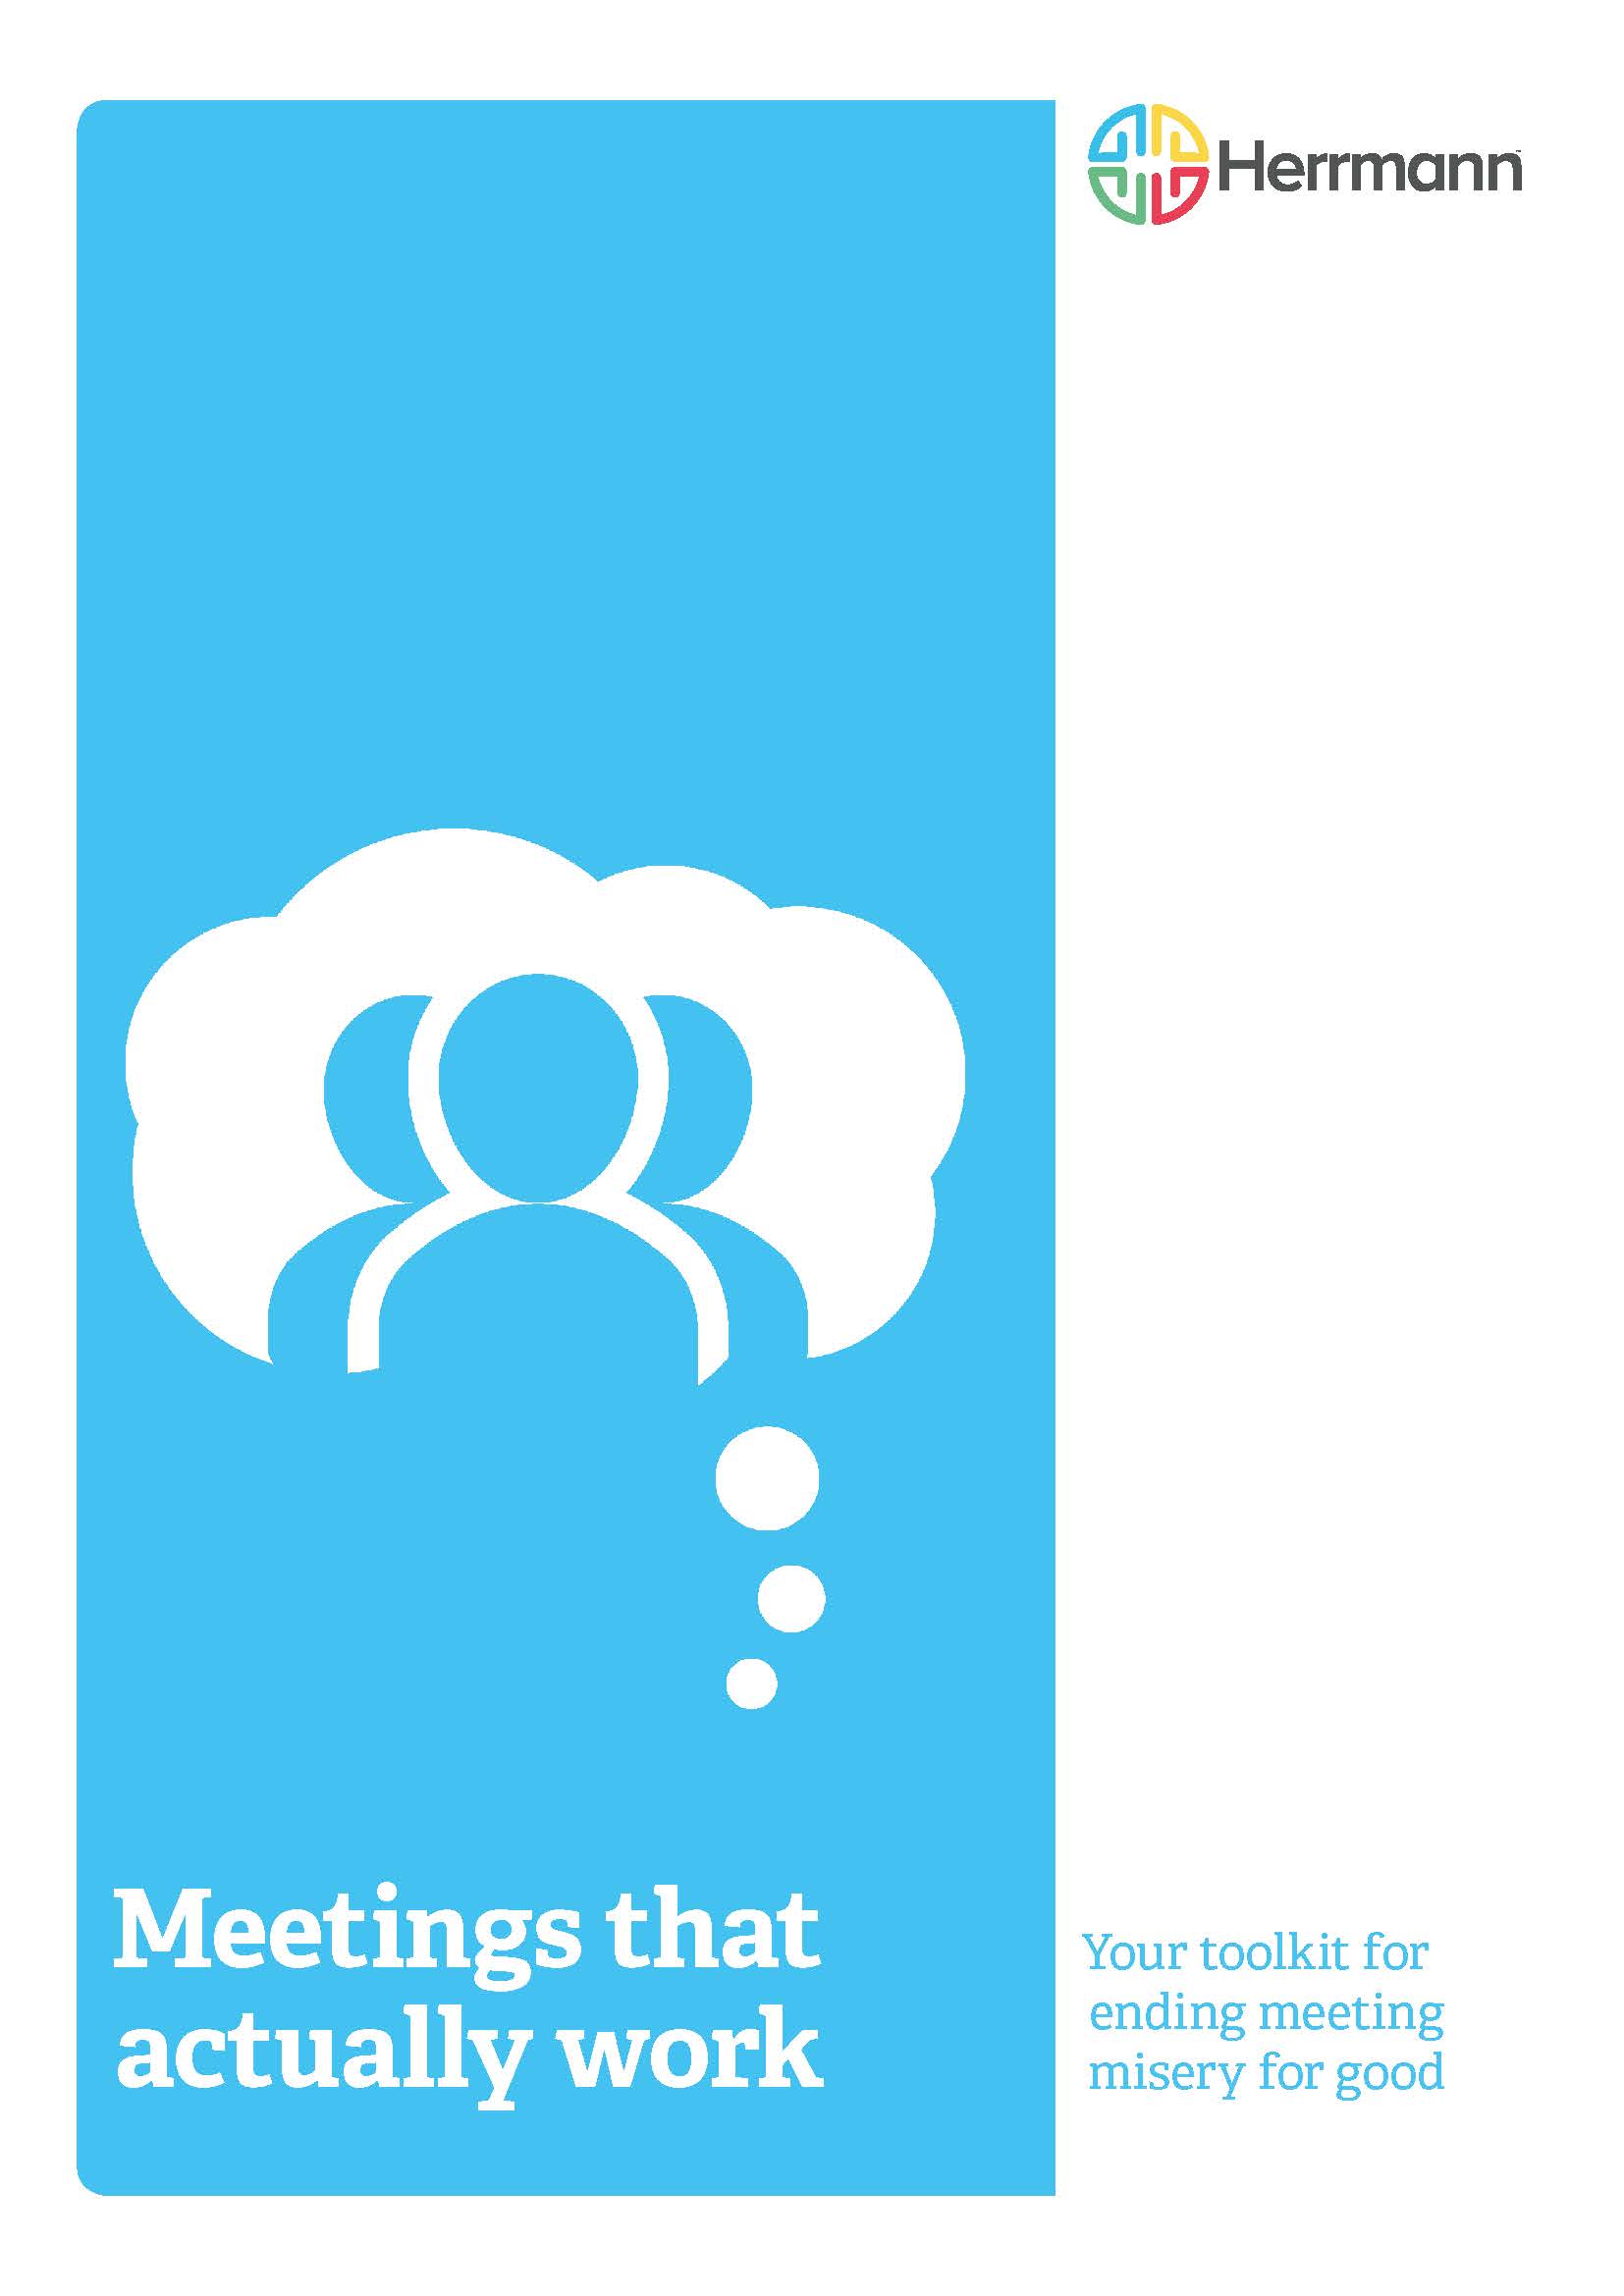 Meetings that Work Toolkit